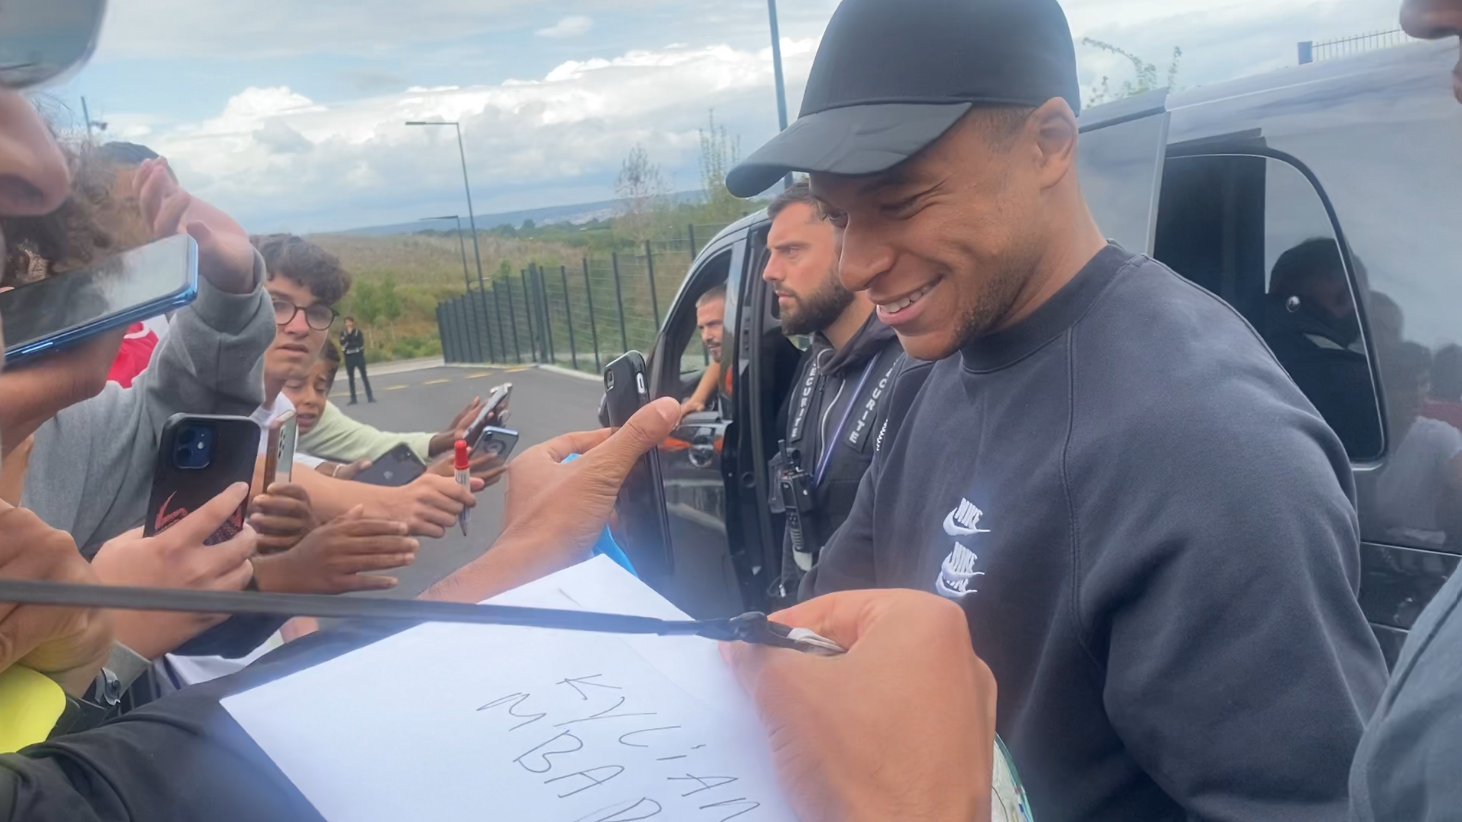 Kylian Mbappé en train de signer des autographes le 25 juillet à Poissy, où il est resté alors que l'équipe A continue sa tournée japonaise. LP/Adel Miliani